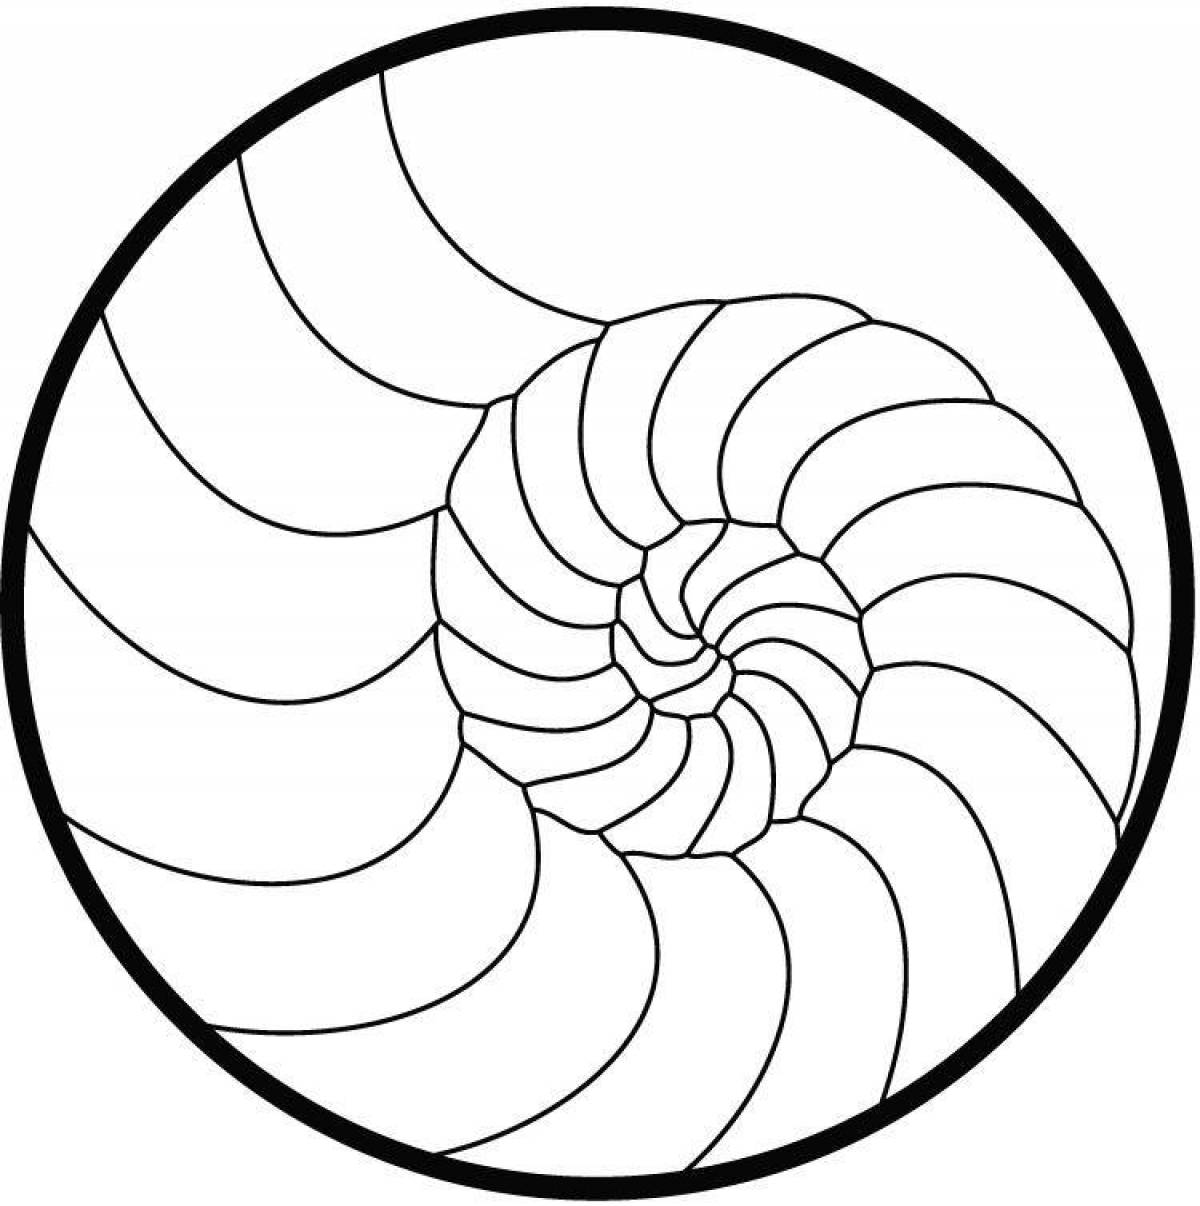 Decorated spiral portrait